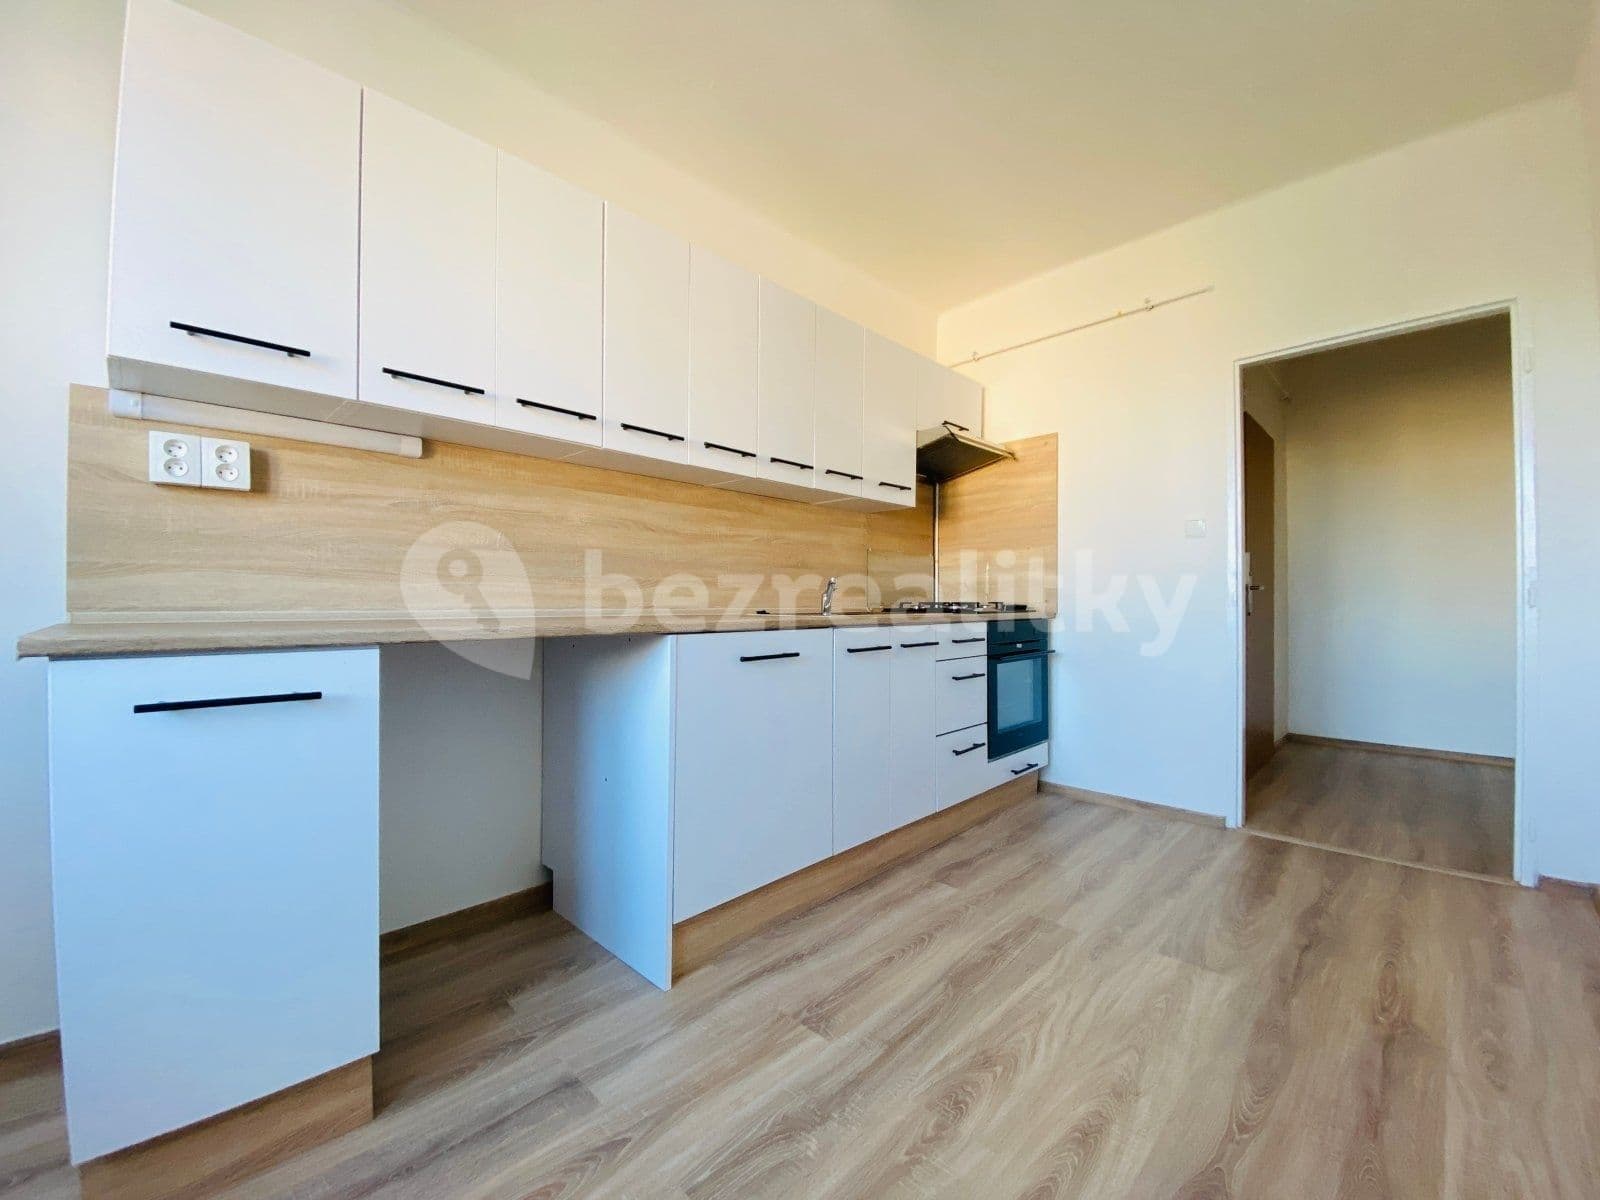 1 bedroom flat to rent, 38 m², Opavská, Ostrava, Moravskoslezský Region